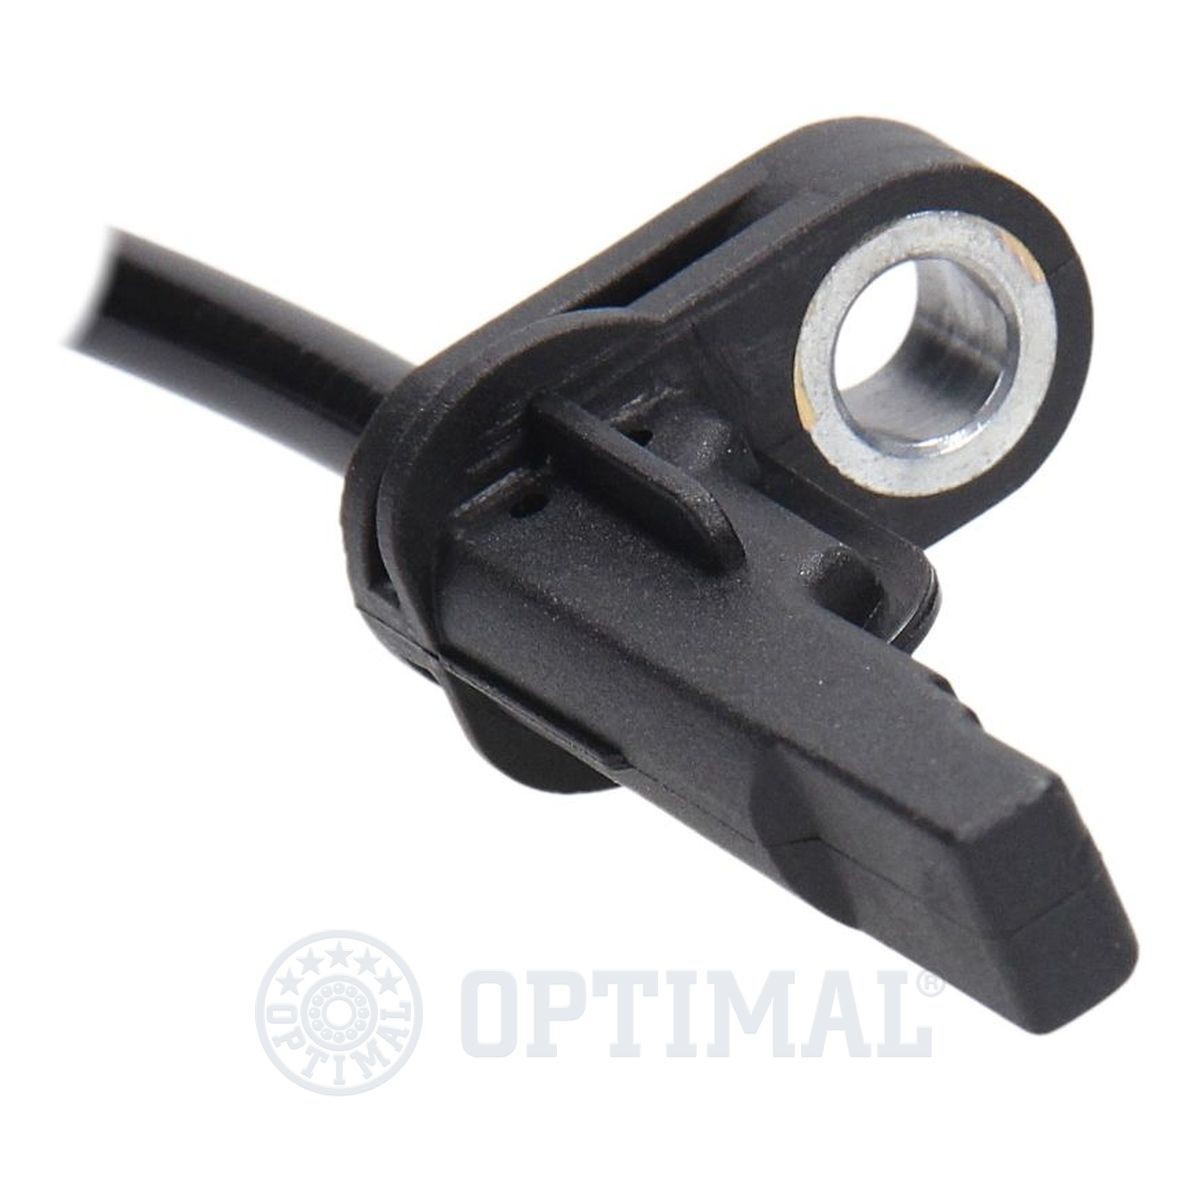 06S659 Anti lock brake sensor OPTIMAL 06-S659 review and test